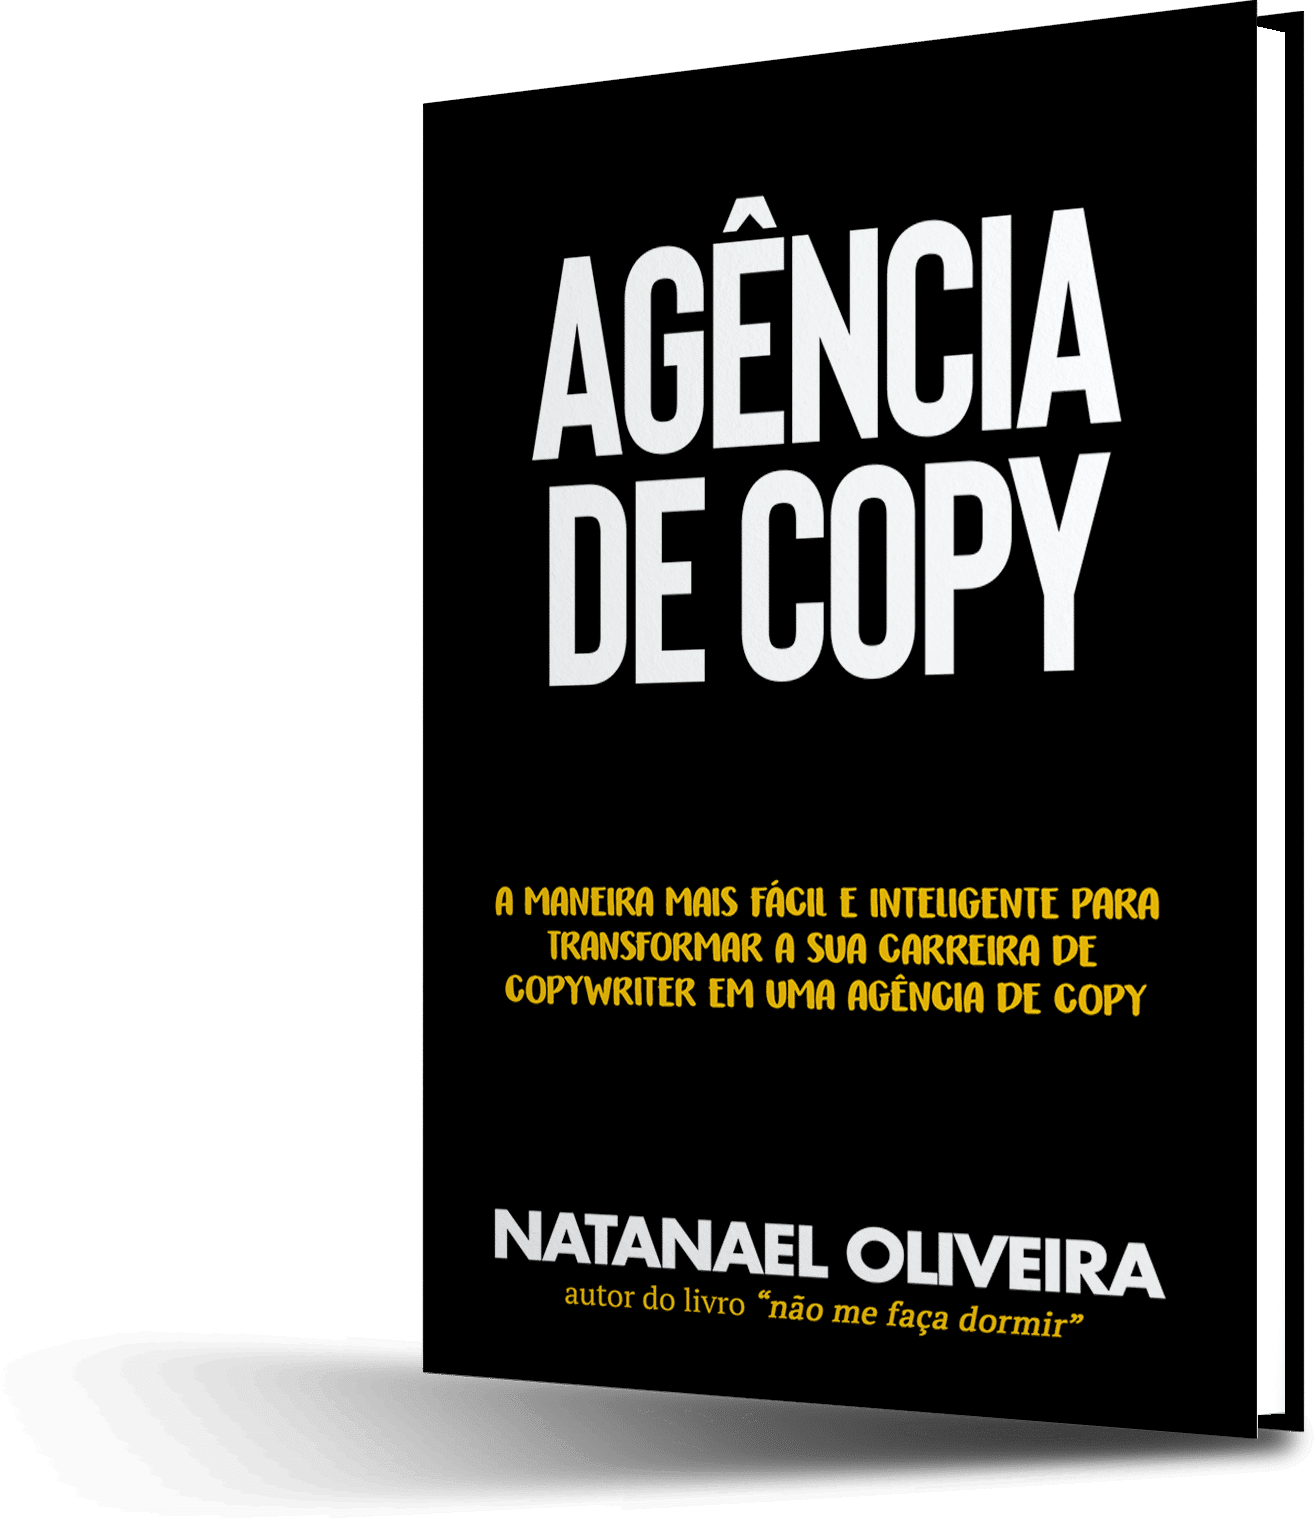 ebook agencia copy 1 - Agência de COPY